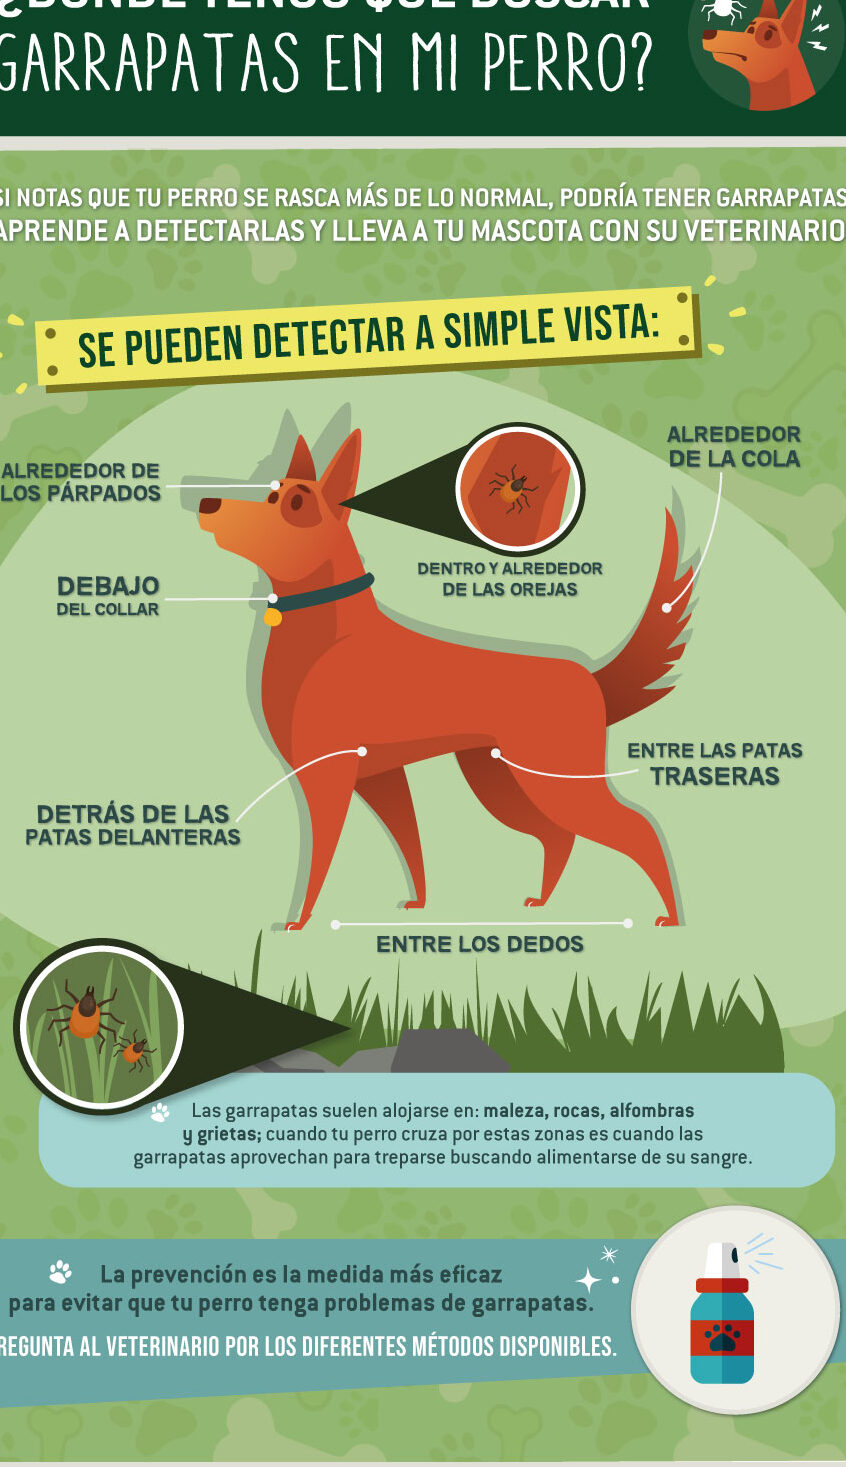 Mantén a tu perro a salvo con la inyección contra garrapatas y pulgas